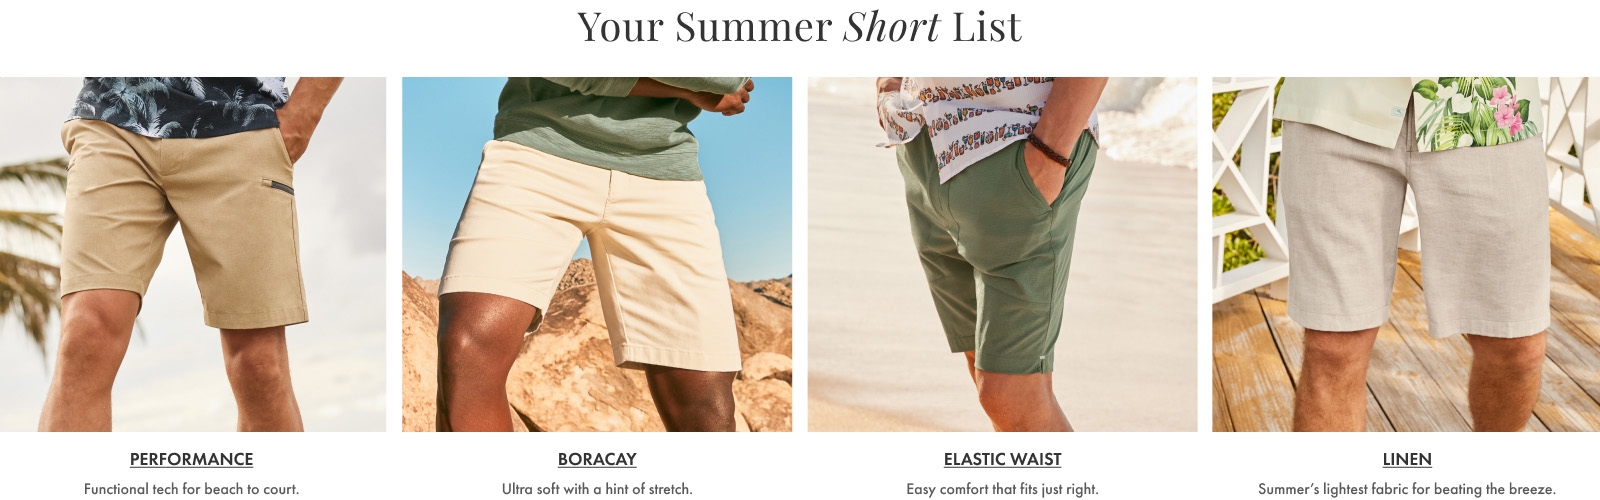 Your Summer Short List